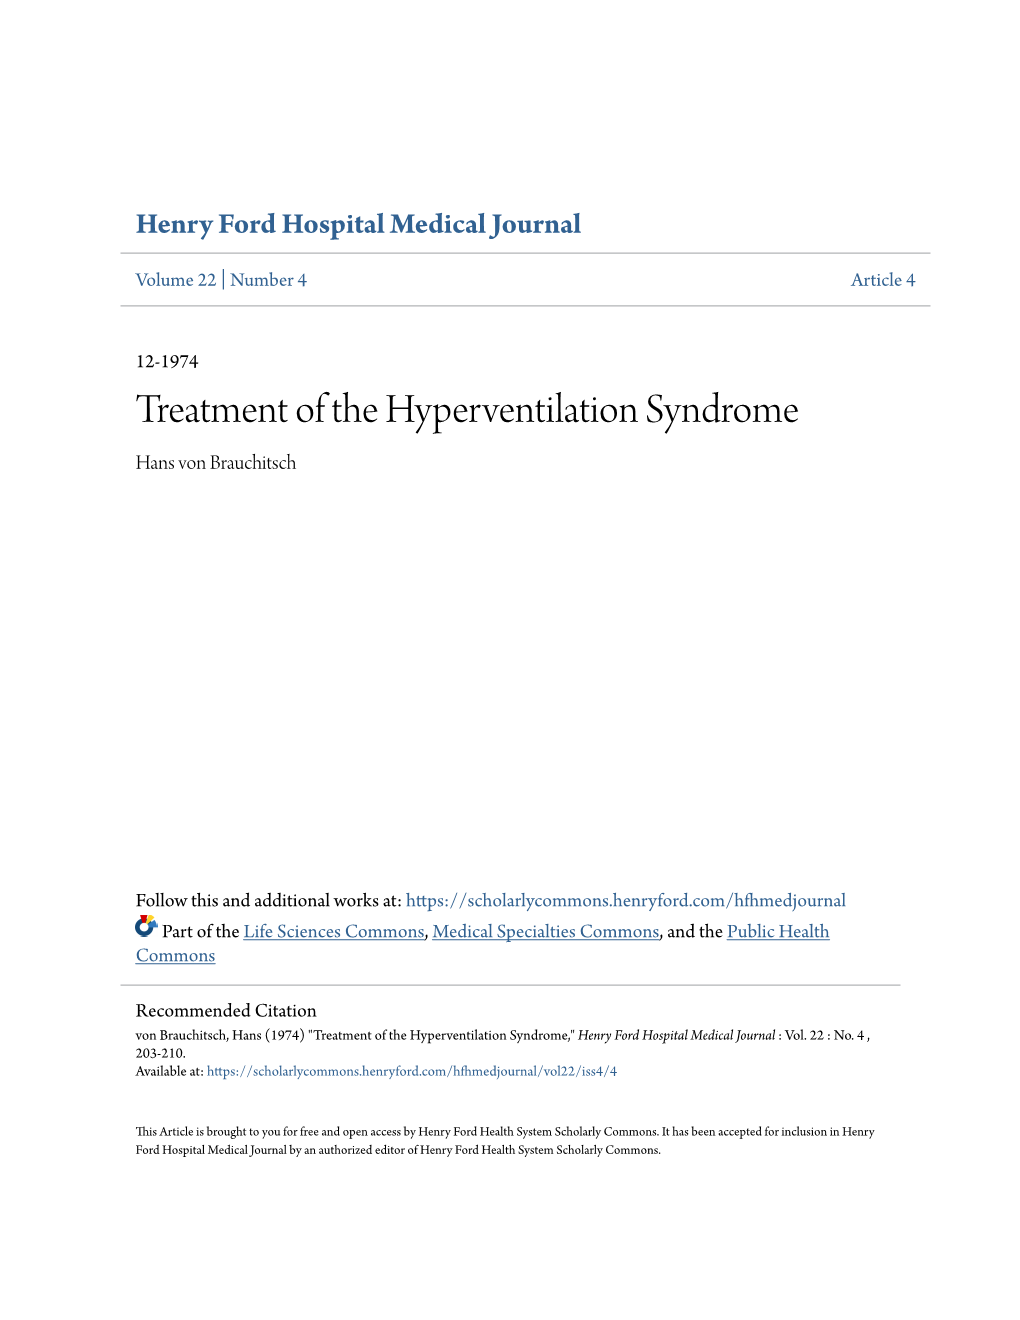 Treatment of the Hyperventilation Syndrome Hans Von Brauchitsch